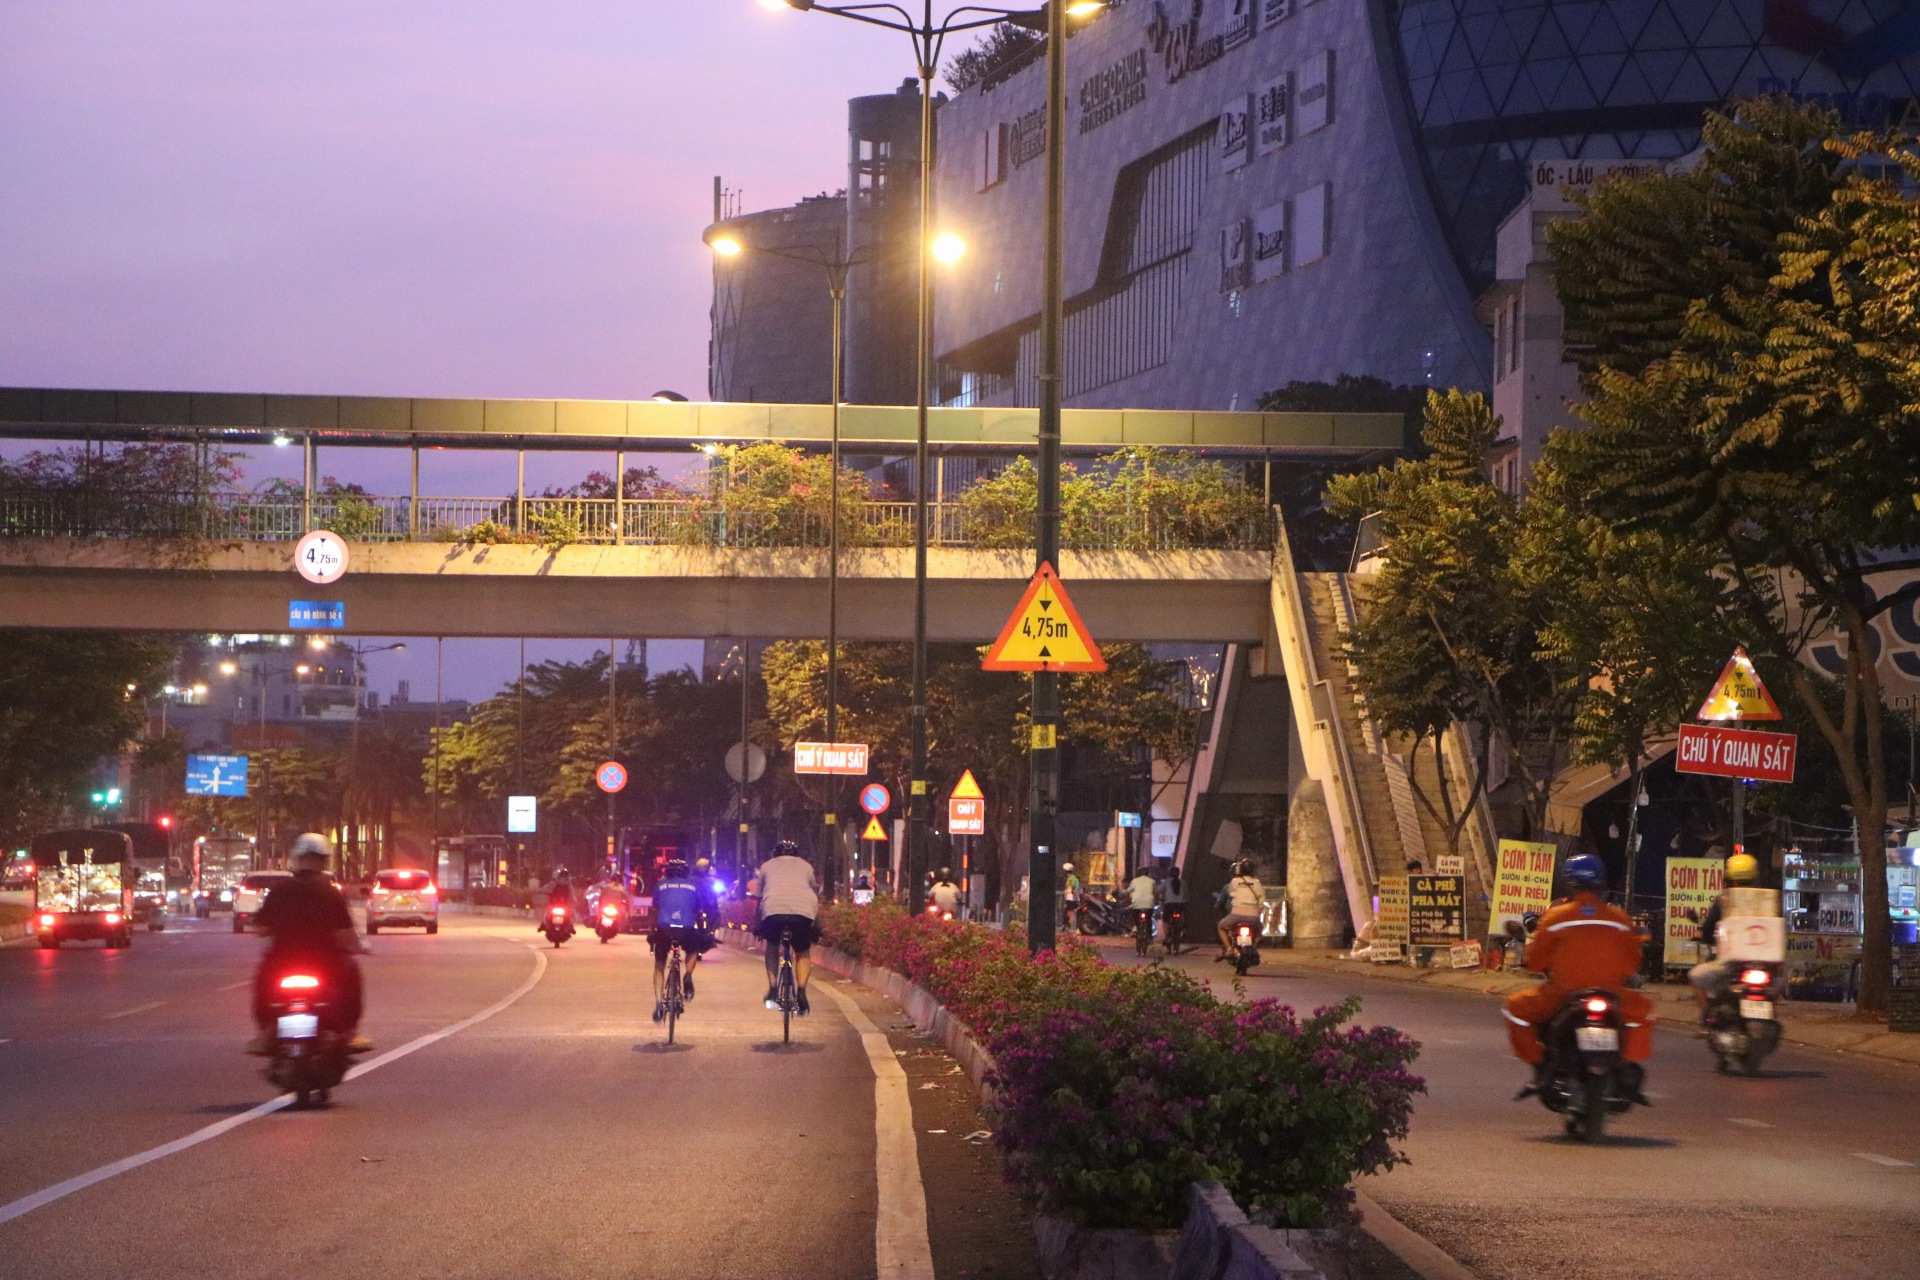 Hơn 4 giờ sáng, CSGT phát hiện nhiều trường hợp người đạp xe tập thể dục đi vào làn đường dành cho ô tô nên mời vào chốt để lập biên bản vi phạm, tạm giữ xe